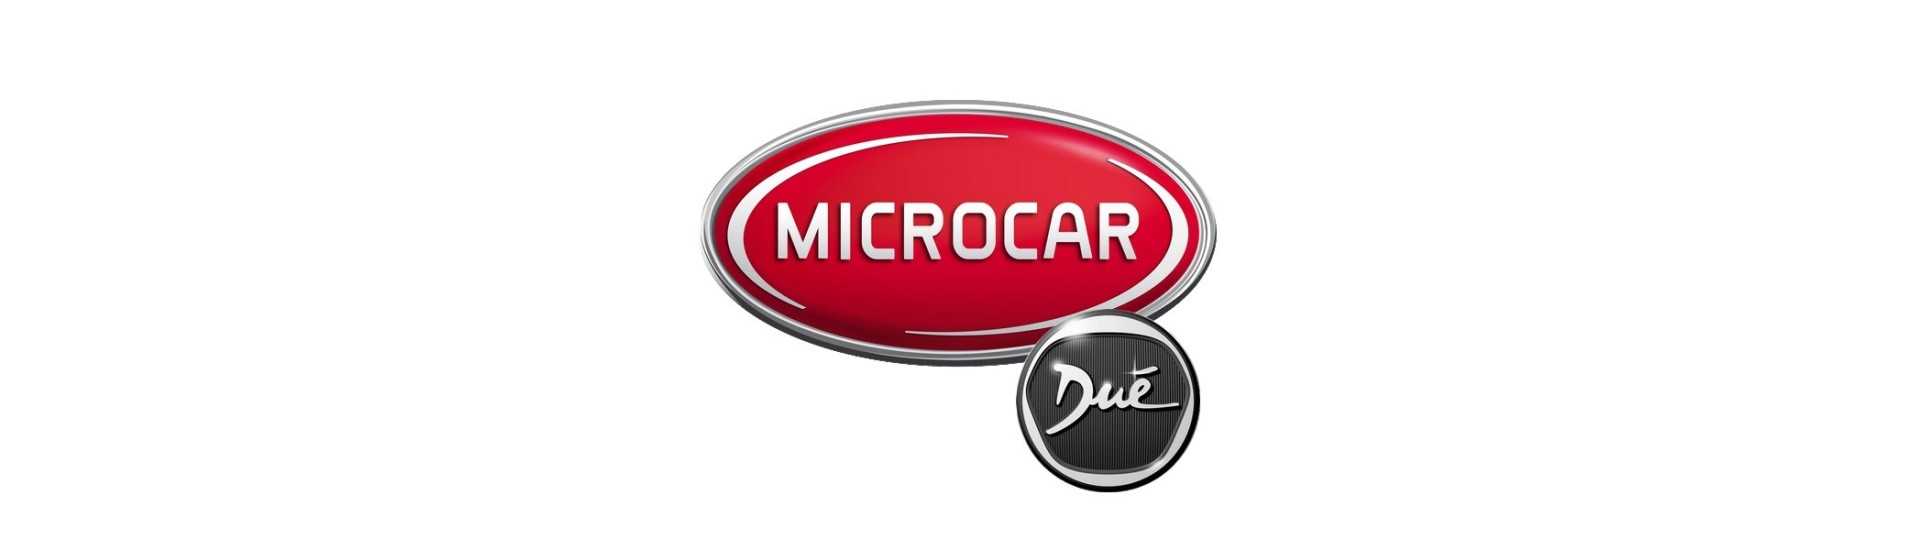 Câble d'ouverture de porte meilleur prix voiture sans permis Microcar Dué